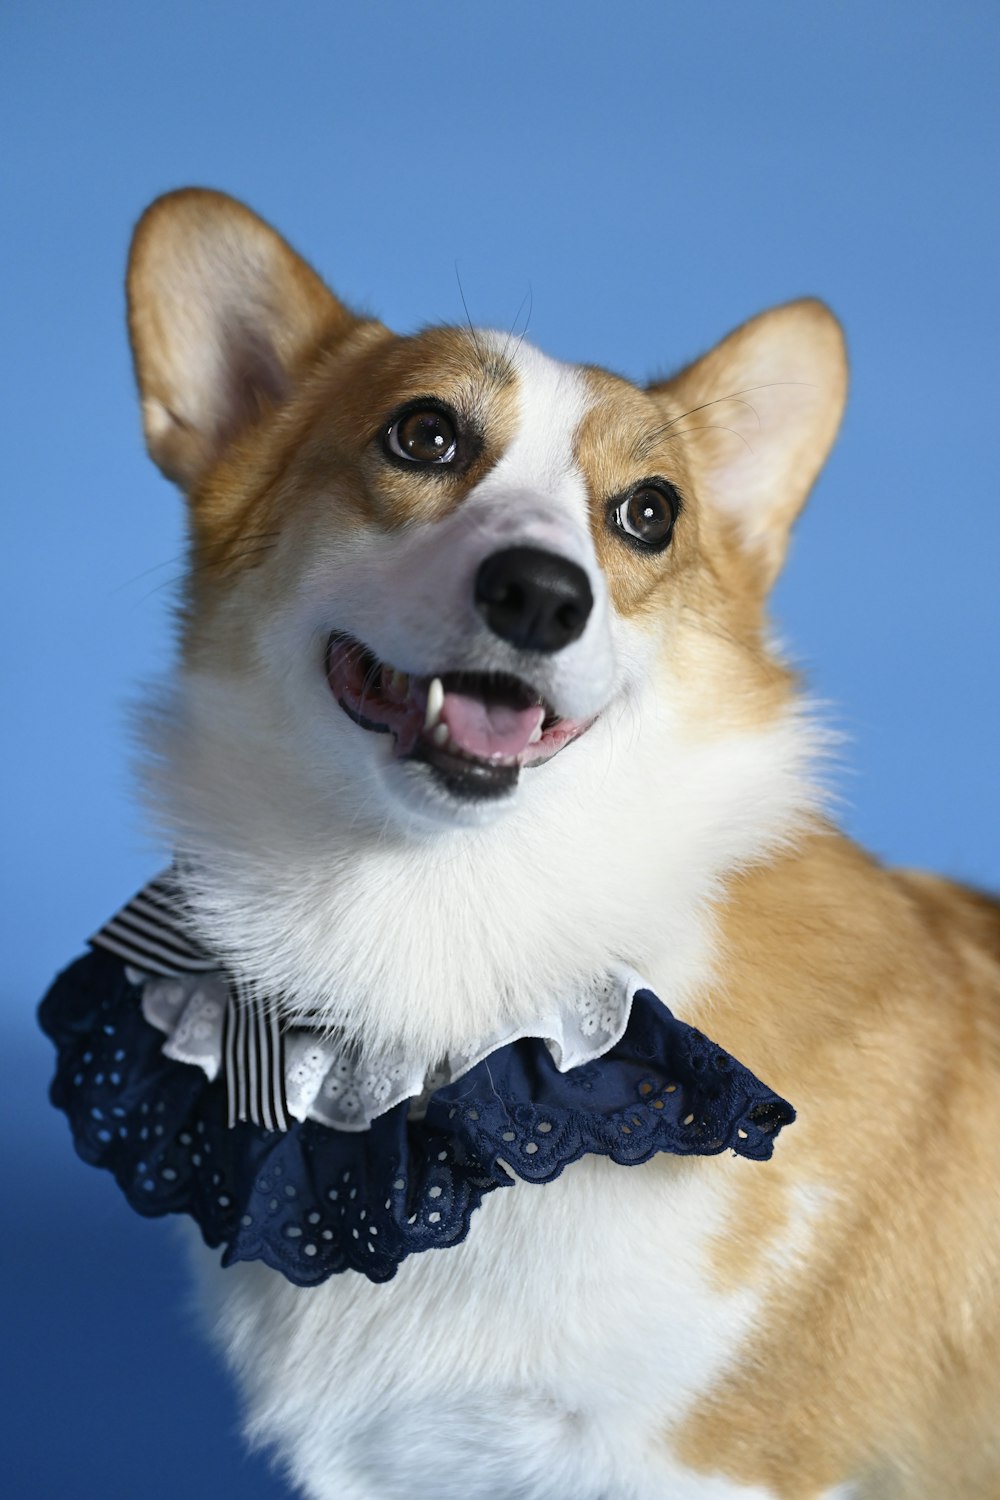 a corgi dog wearing a blue collar